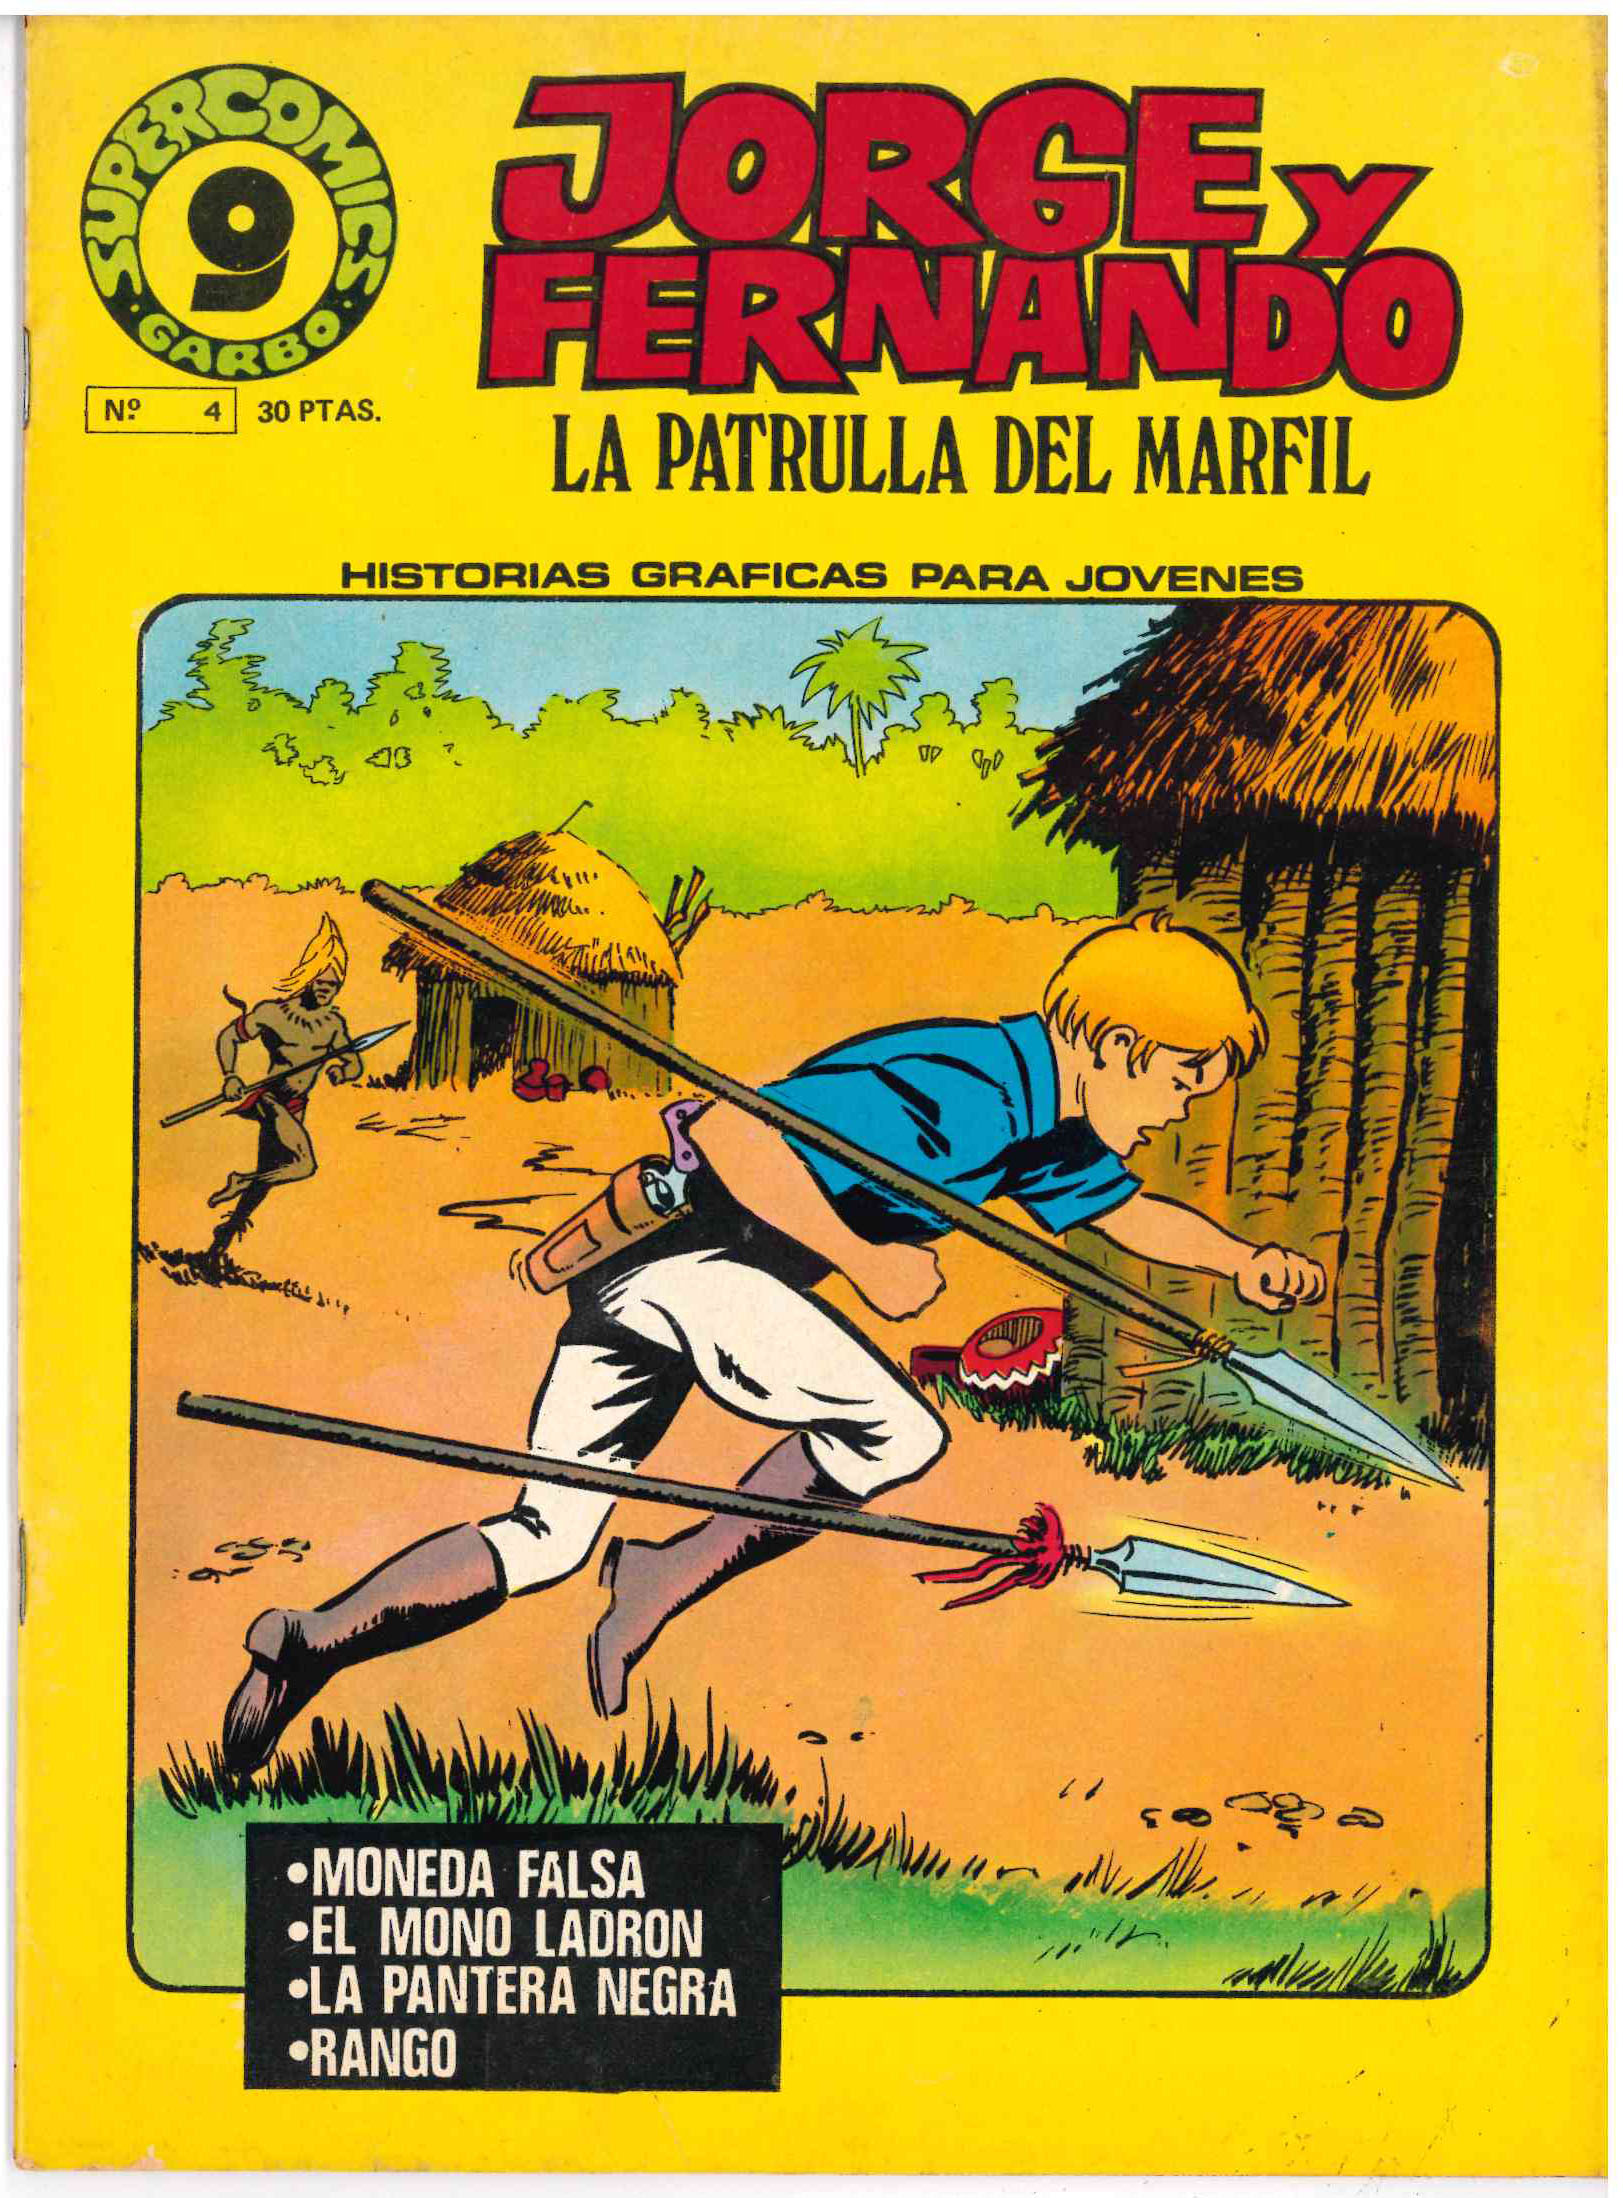 Supercomics Garbo. Garbo 1976. Nº 4. Jorge y Fernando